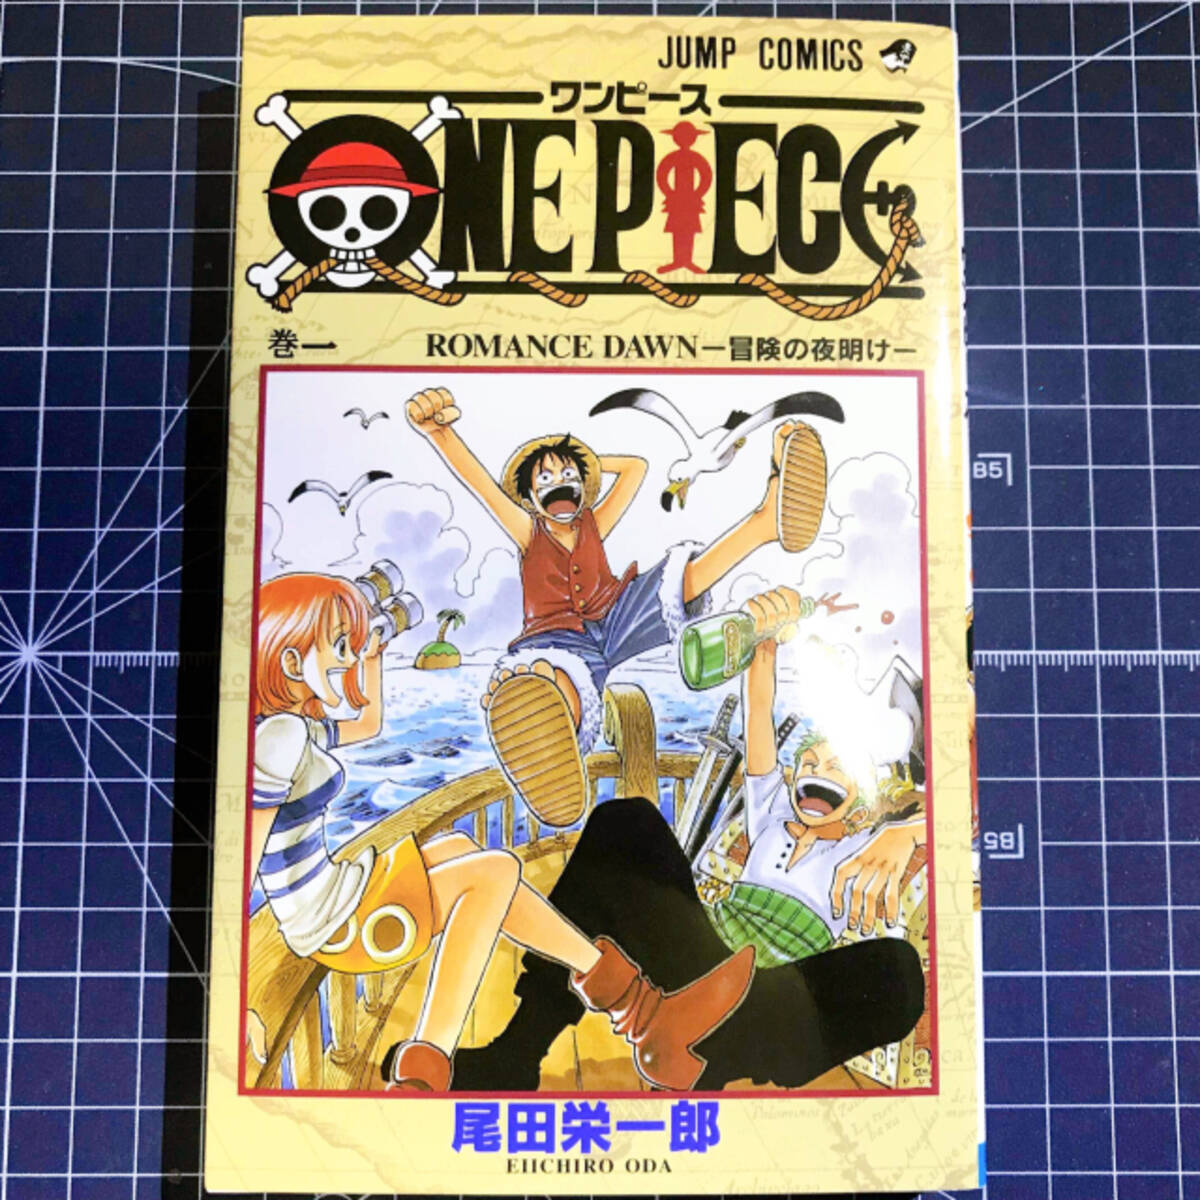 One Piece コビーは 少将 だった 95巻で修正された設定とセリフ 21年3月18日 エキサイトニュース 2 3